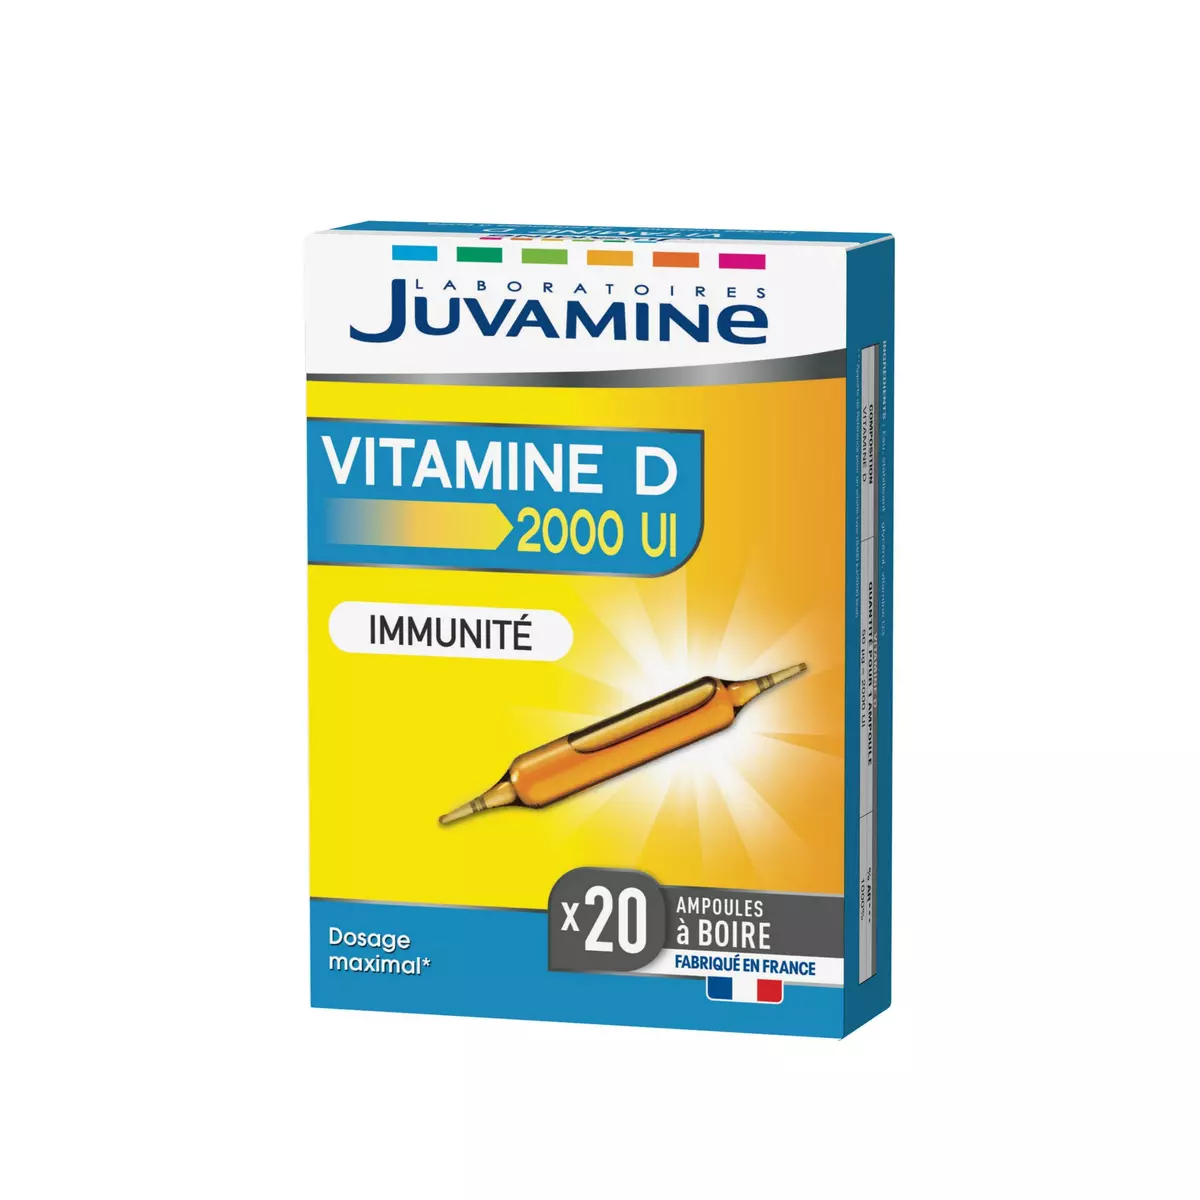 JUVAMINE Vitamine D 2000UI Immunité 20 ampoules 20x5ml